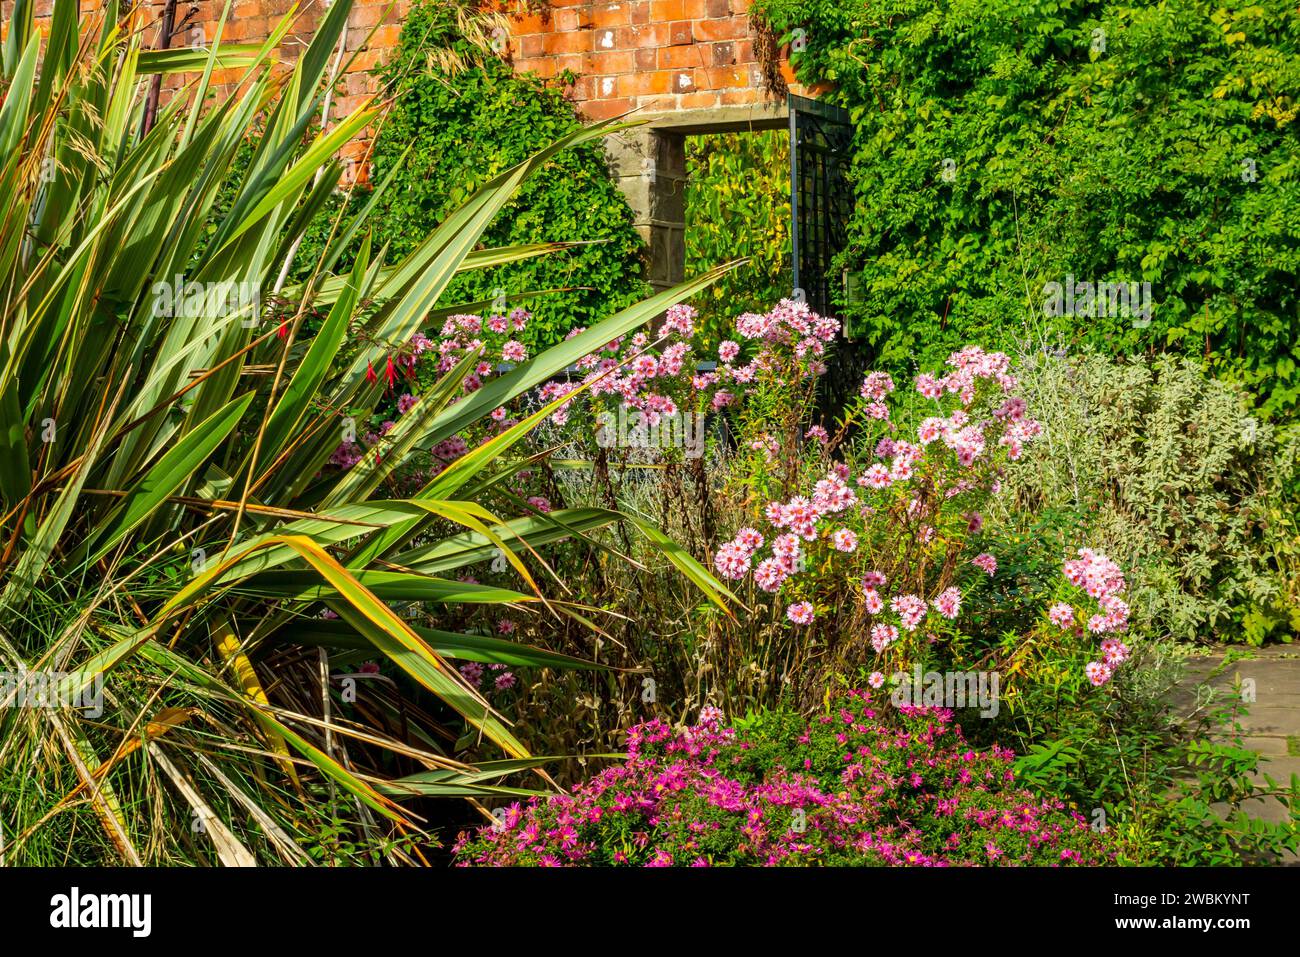 The Old English Garden un jardin clos traditionnel aux couleurs de la fin de l'automne au château d'Elvaston près de Derby Angleterre Royaume-Uni Banque D'Images